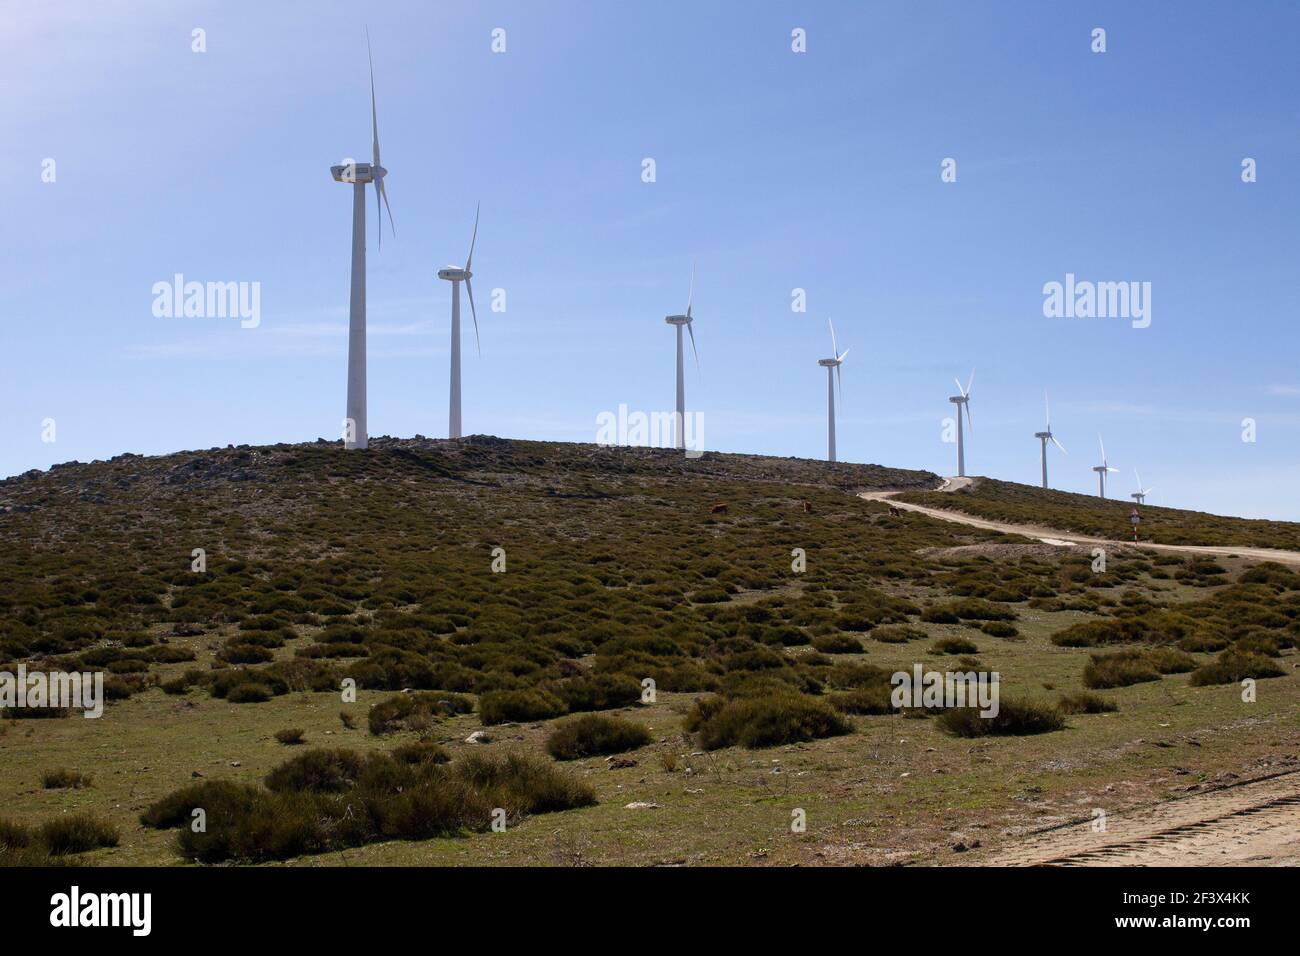 éoliennes produisant de l'électricité sur une division de montagne dans un vent fort Banque D'Images